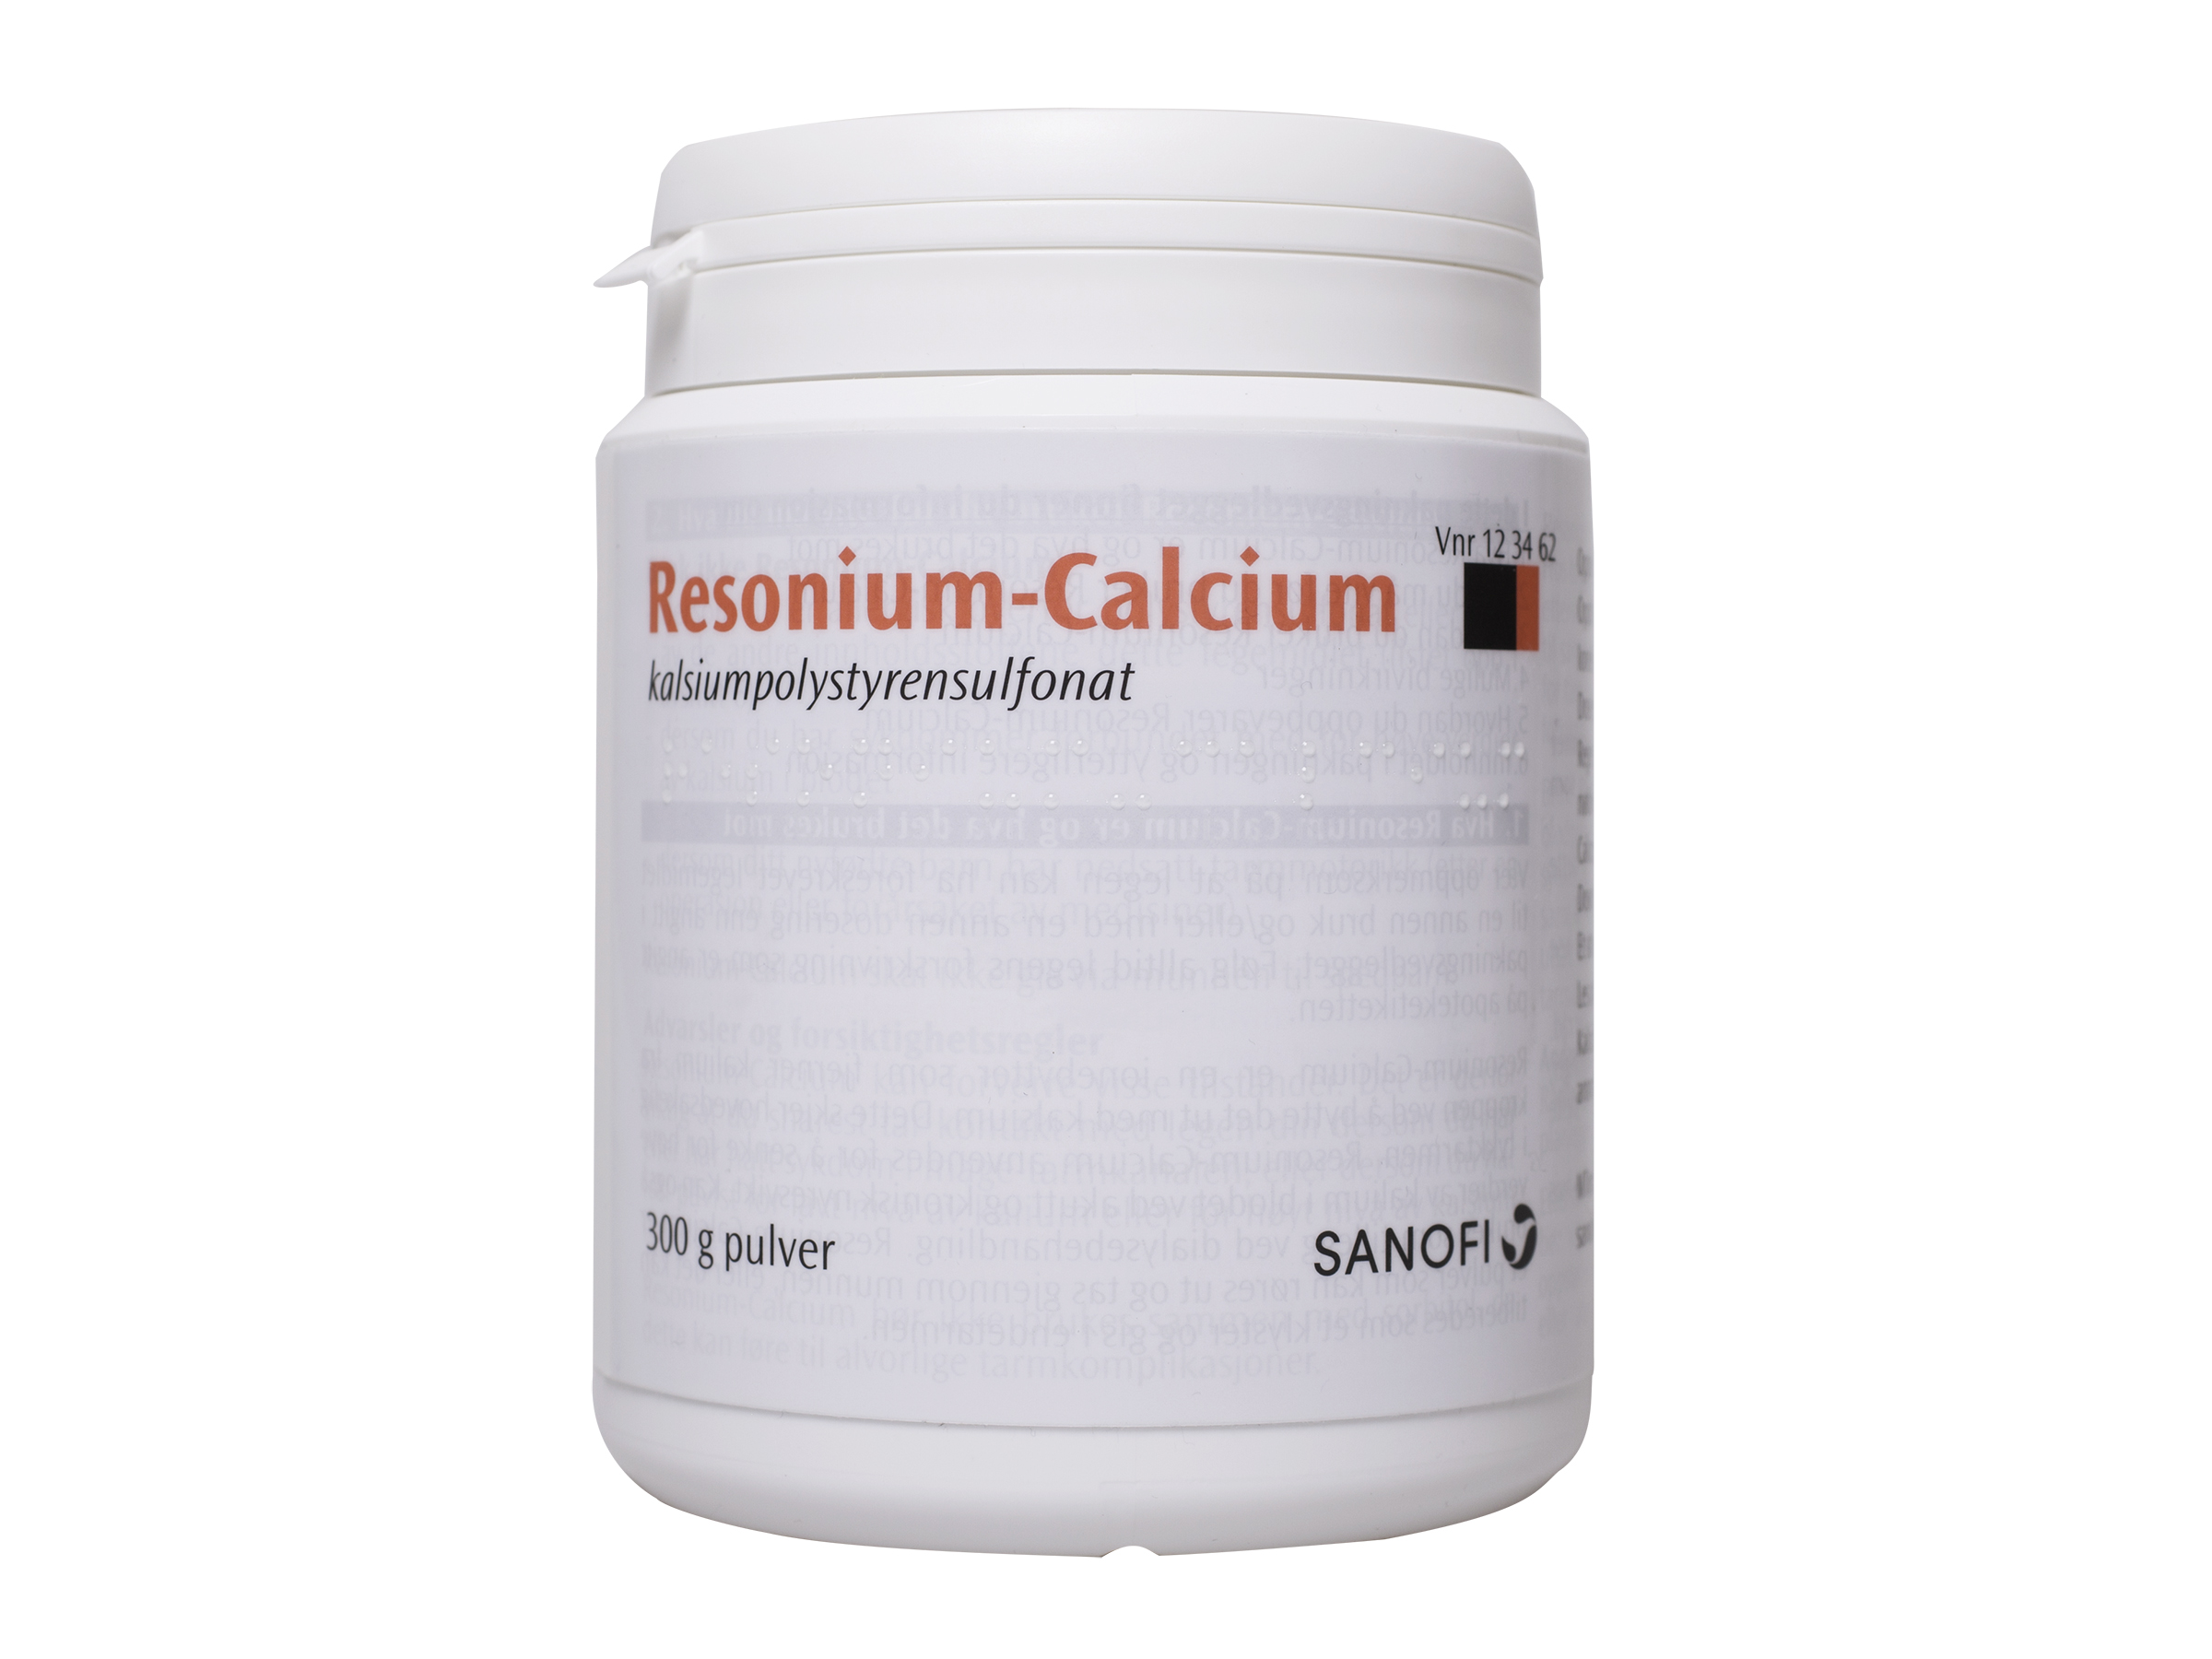 Resonius-Calcium Resonium-Calcium pulver, 300 gram